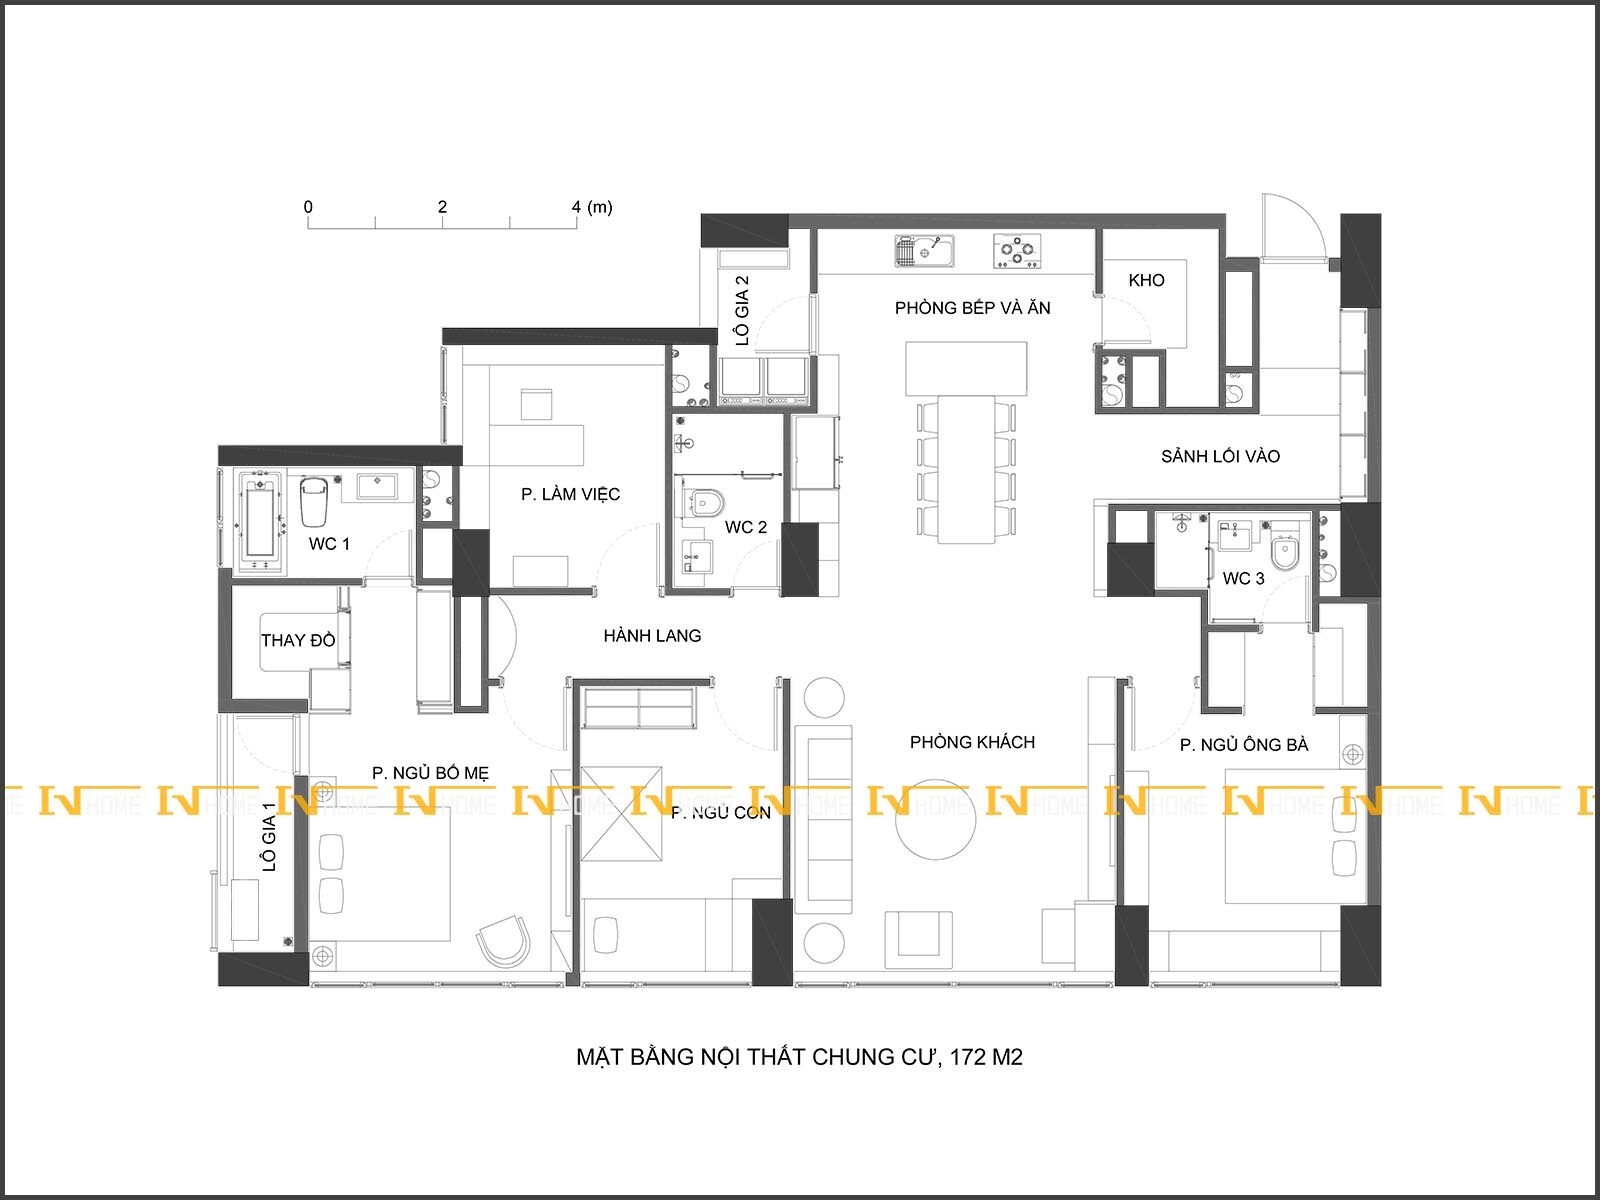 201101, mặt bằng nội thất chung cư 172 m2.